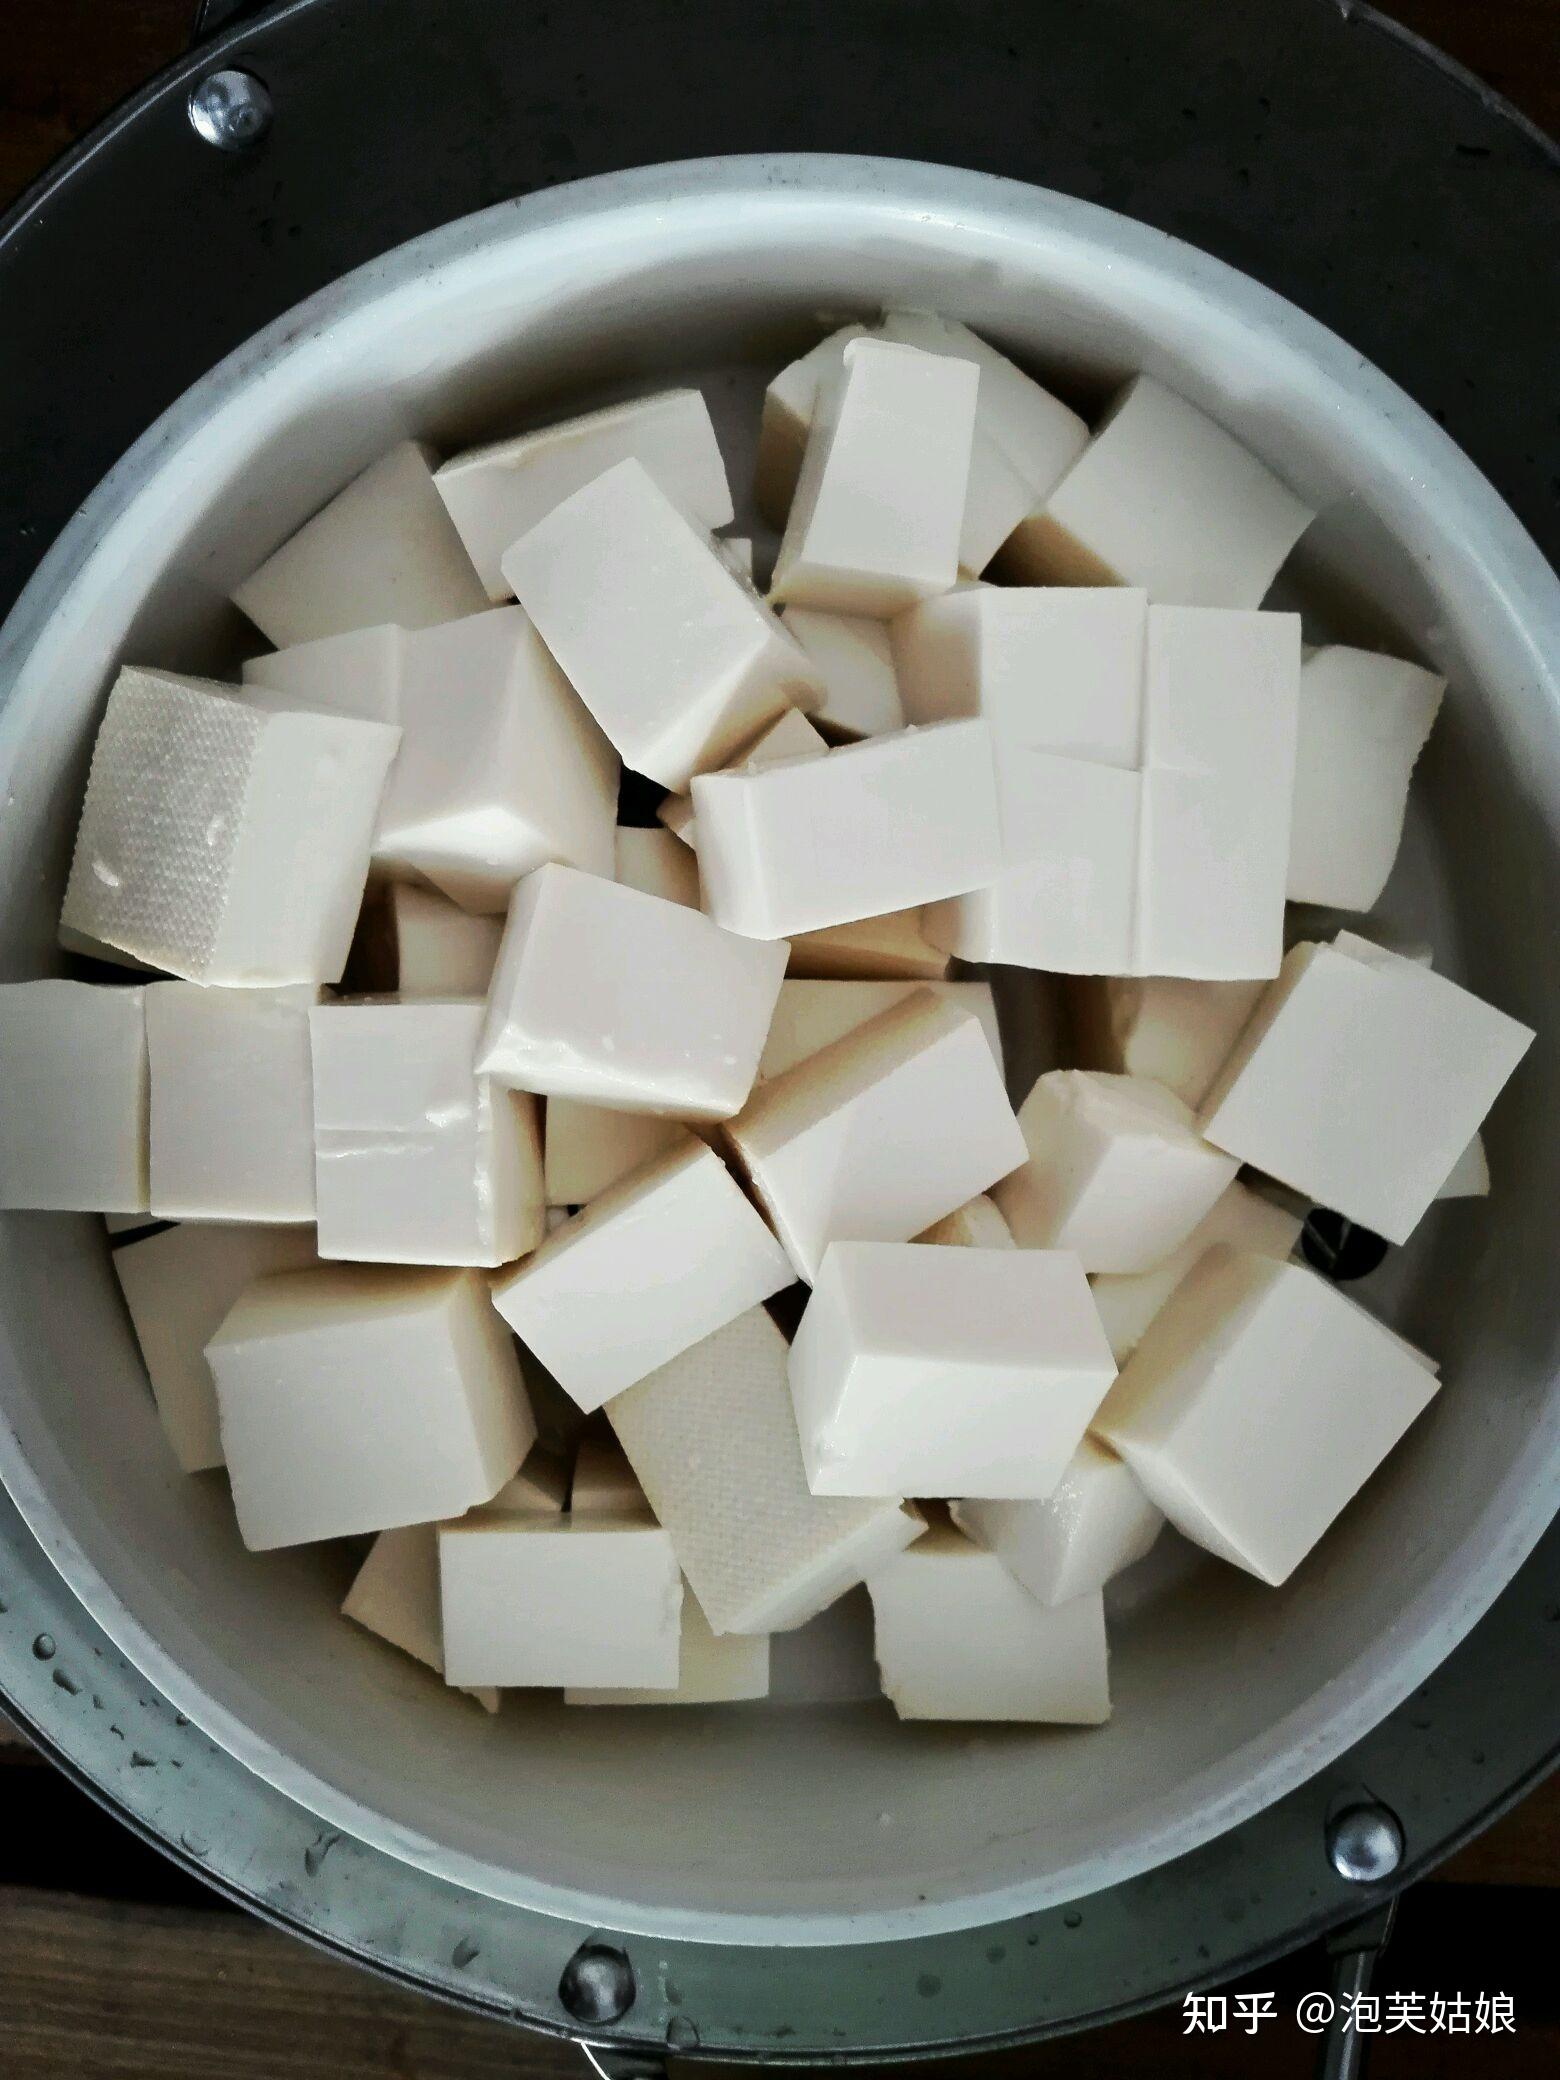 霉豆腐正常的发霉图片-图库-五毛网